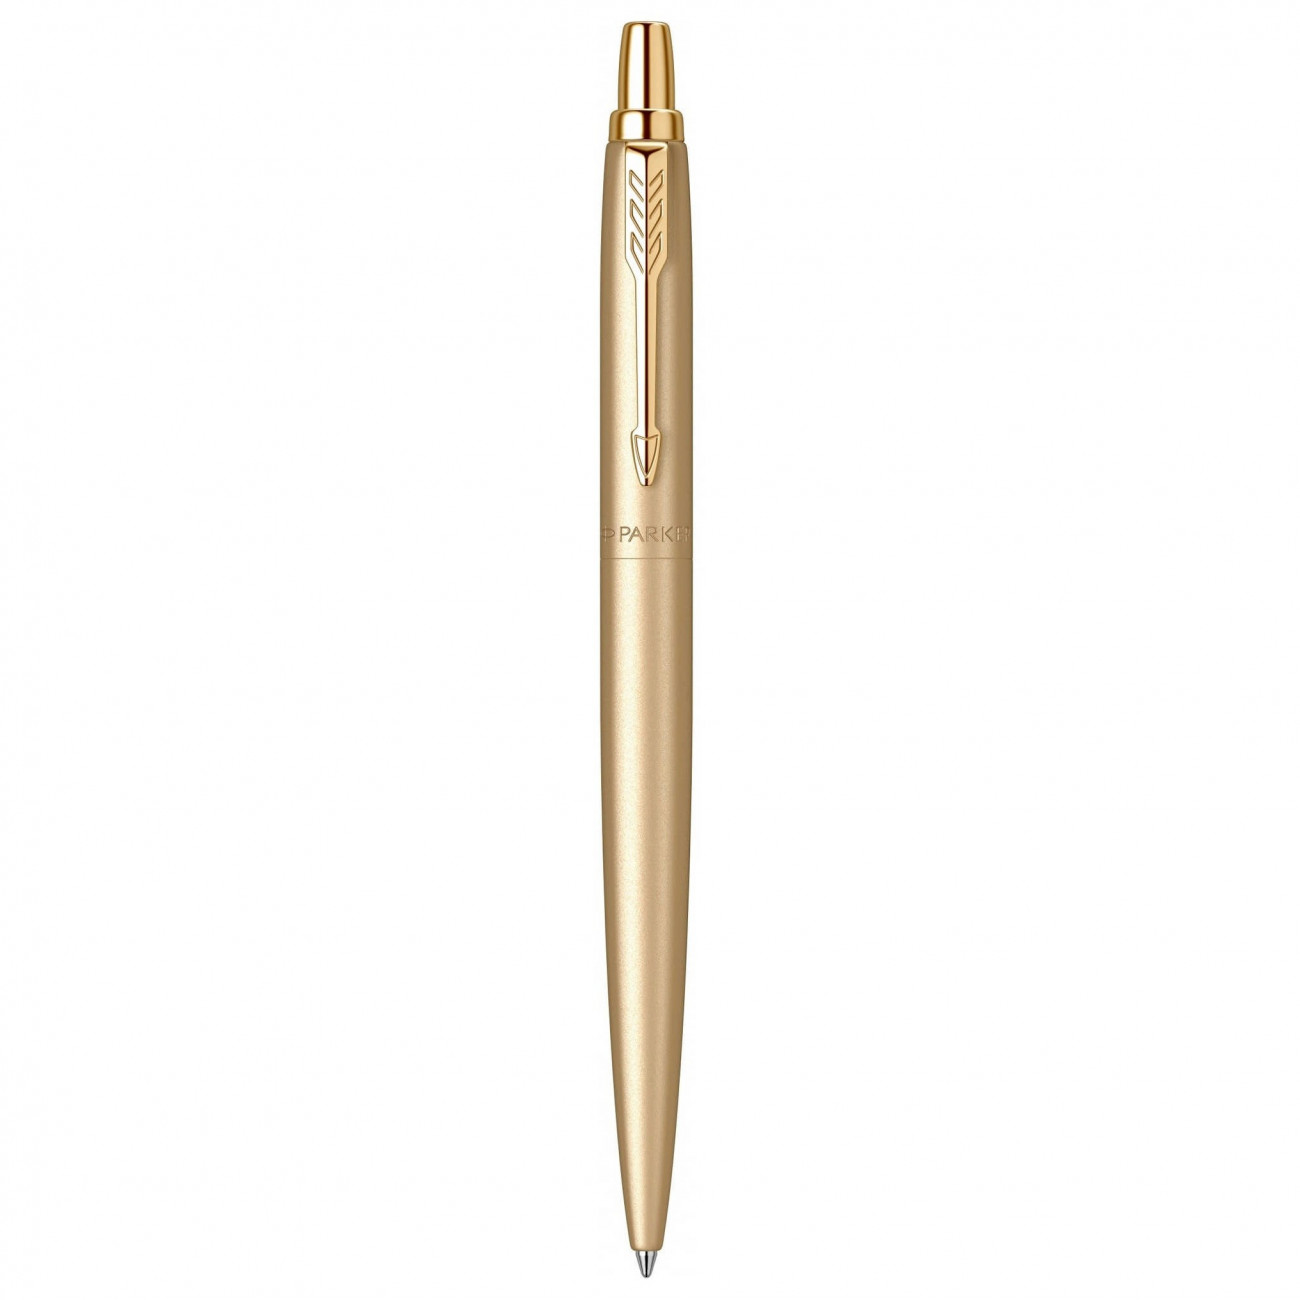 Шариковая ручка Parker Jotter XL Monochrome Gold